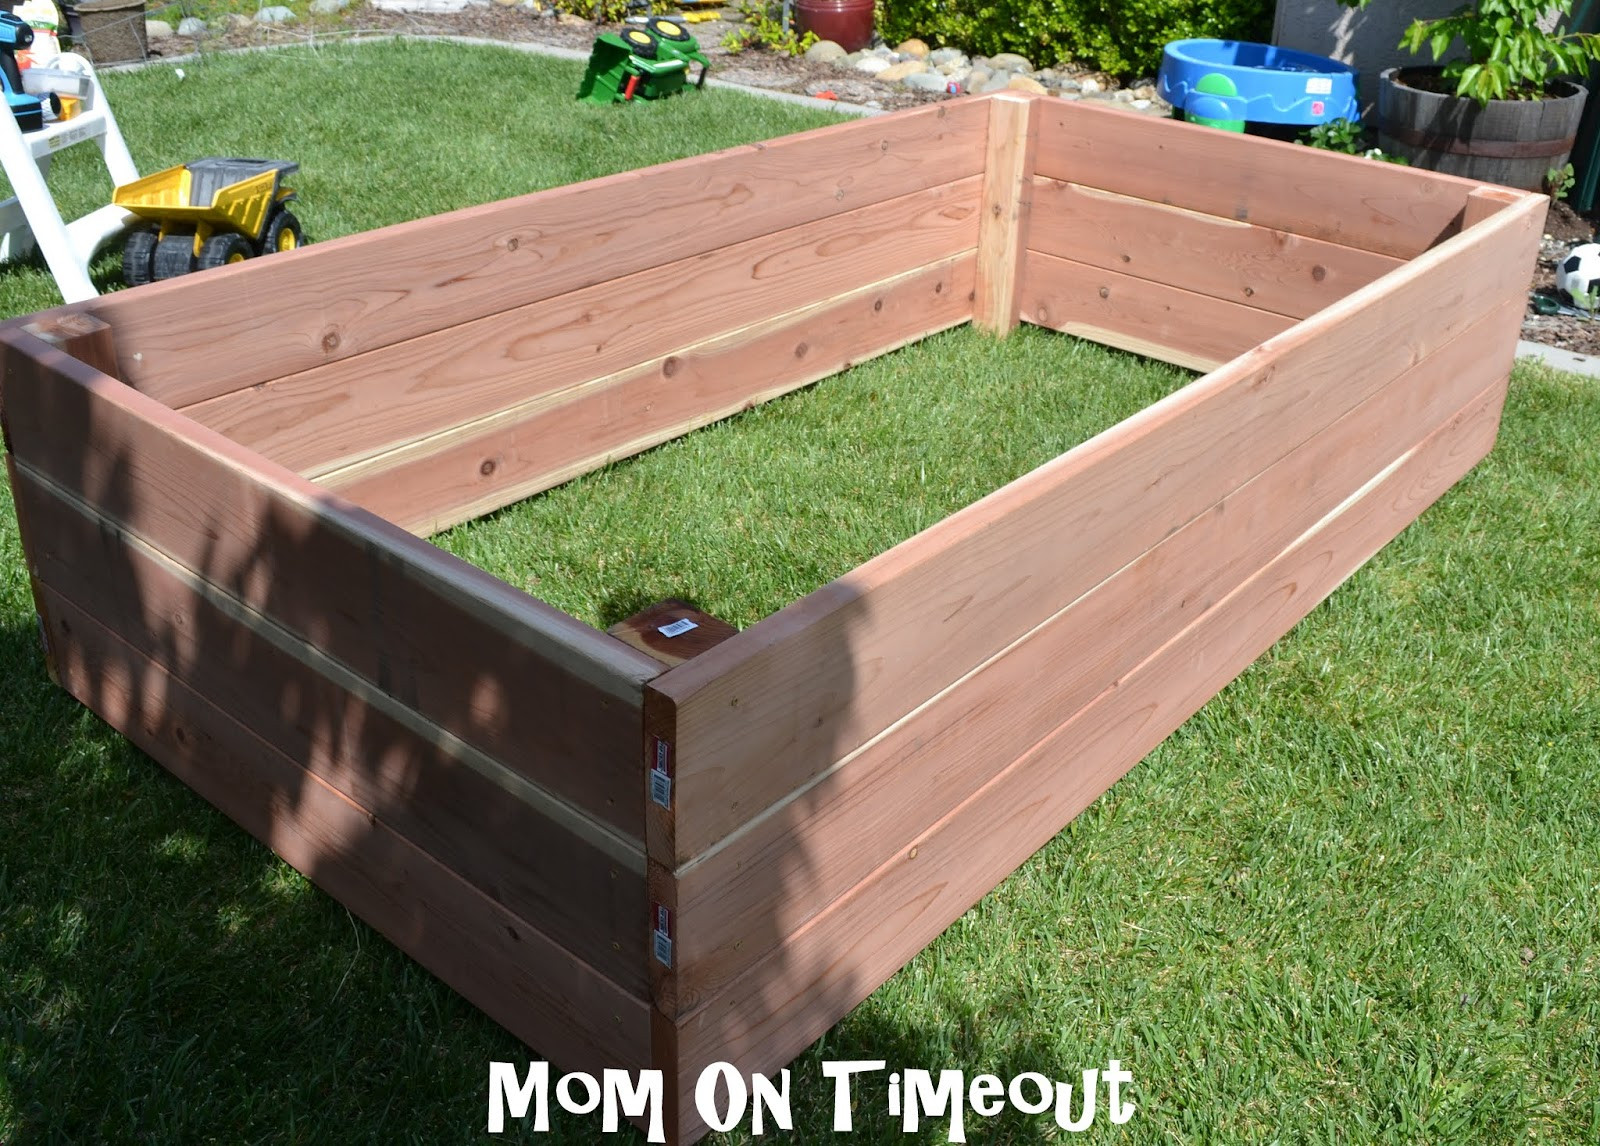 Best ideas about Garden Planter Boxes
. Save or Pin DIY Garden Planter Box Tutorial Now.